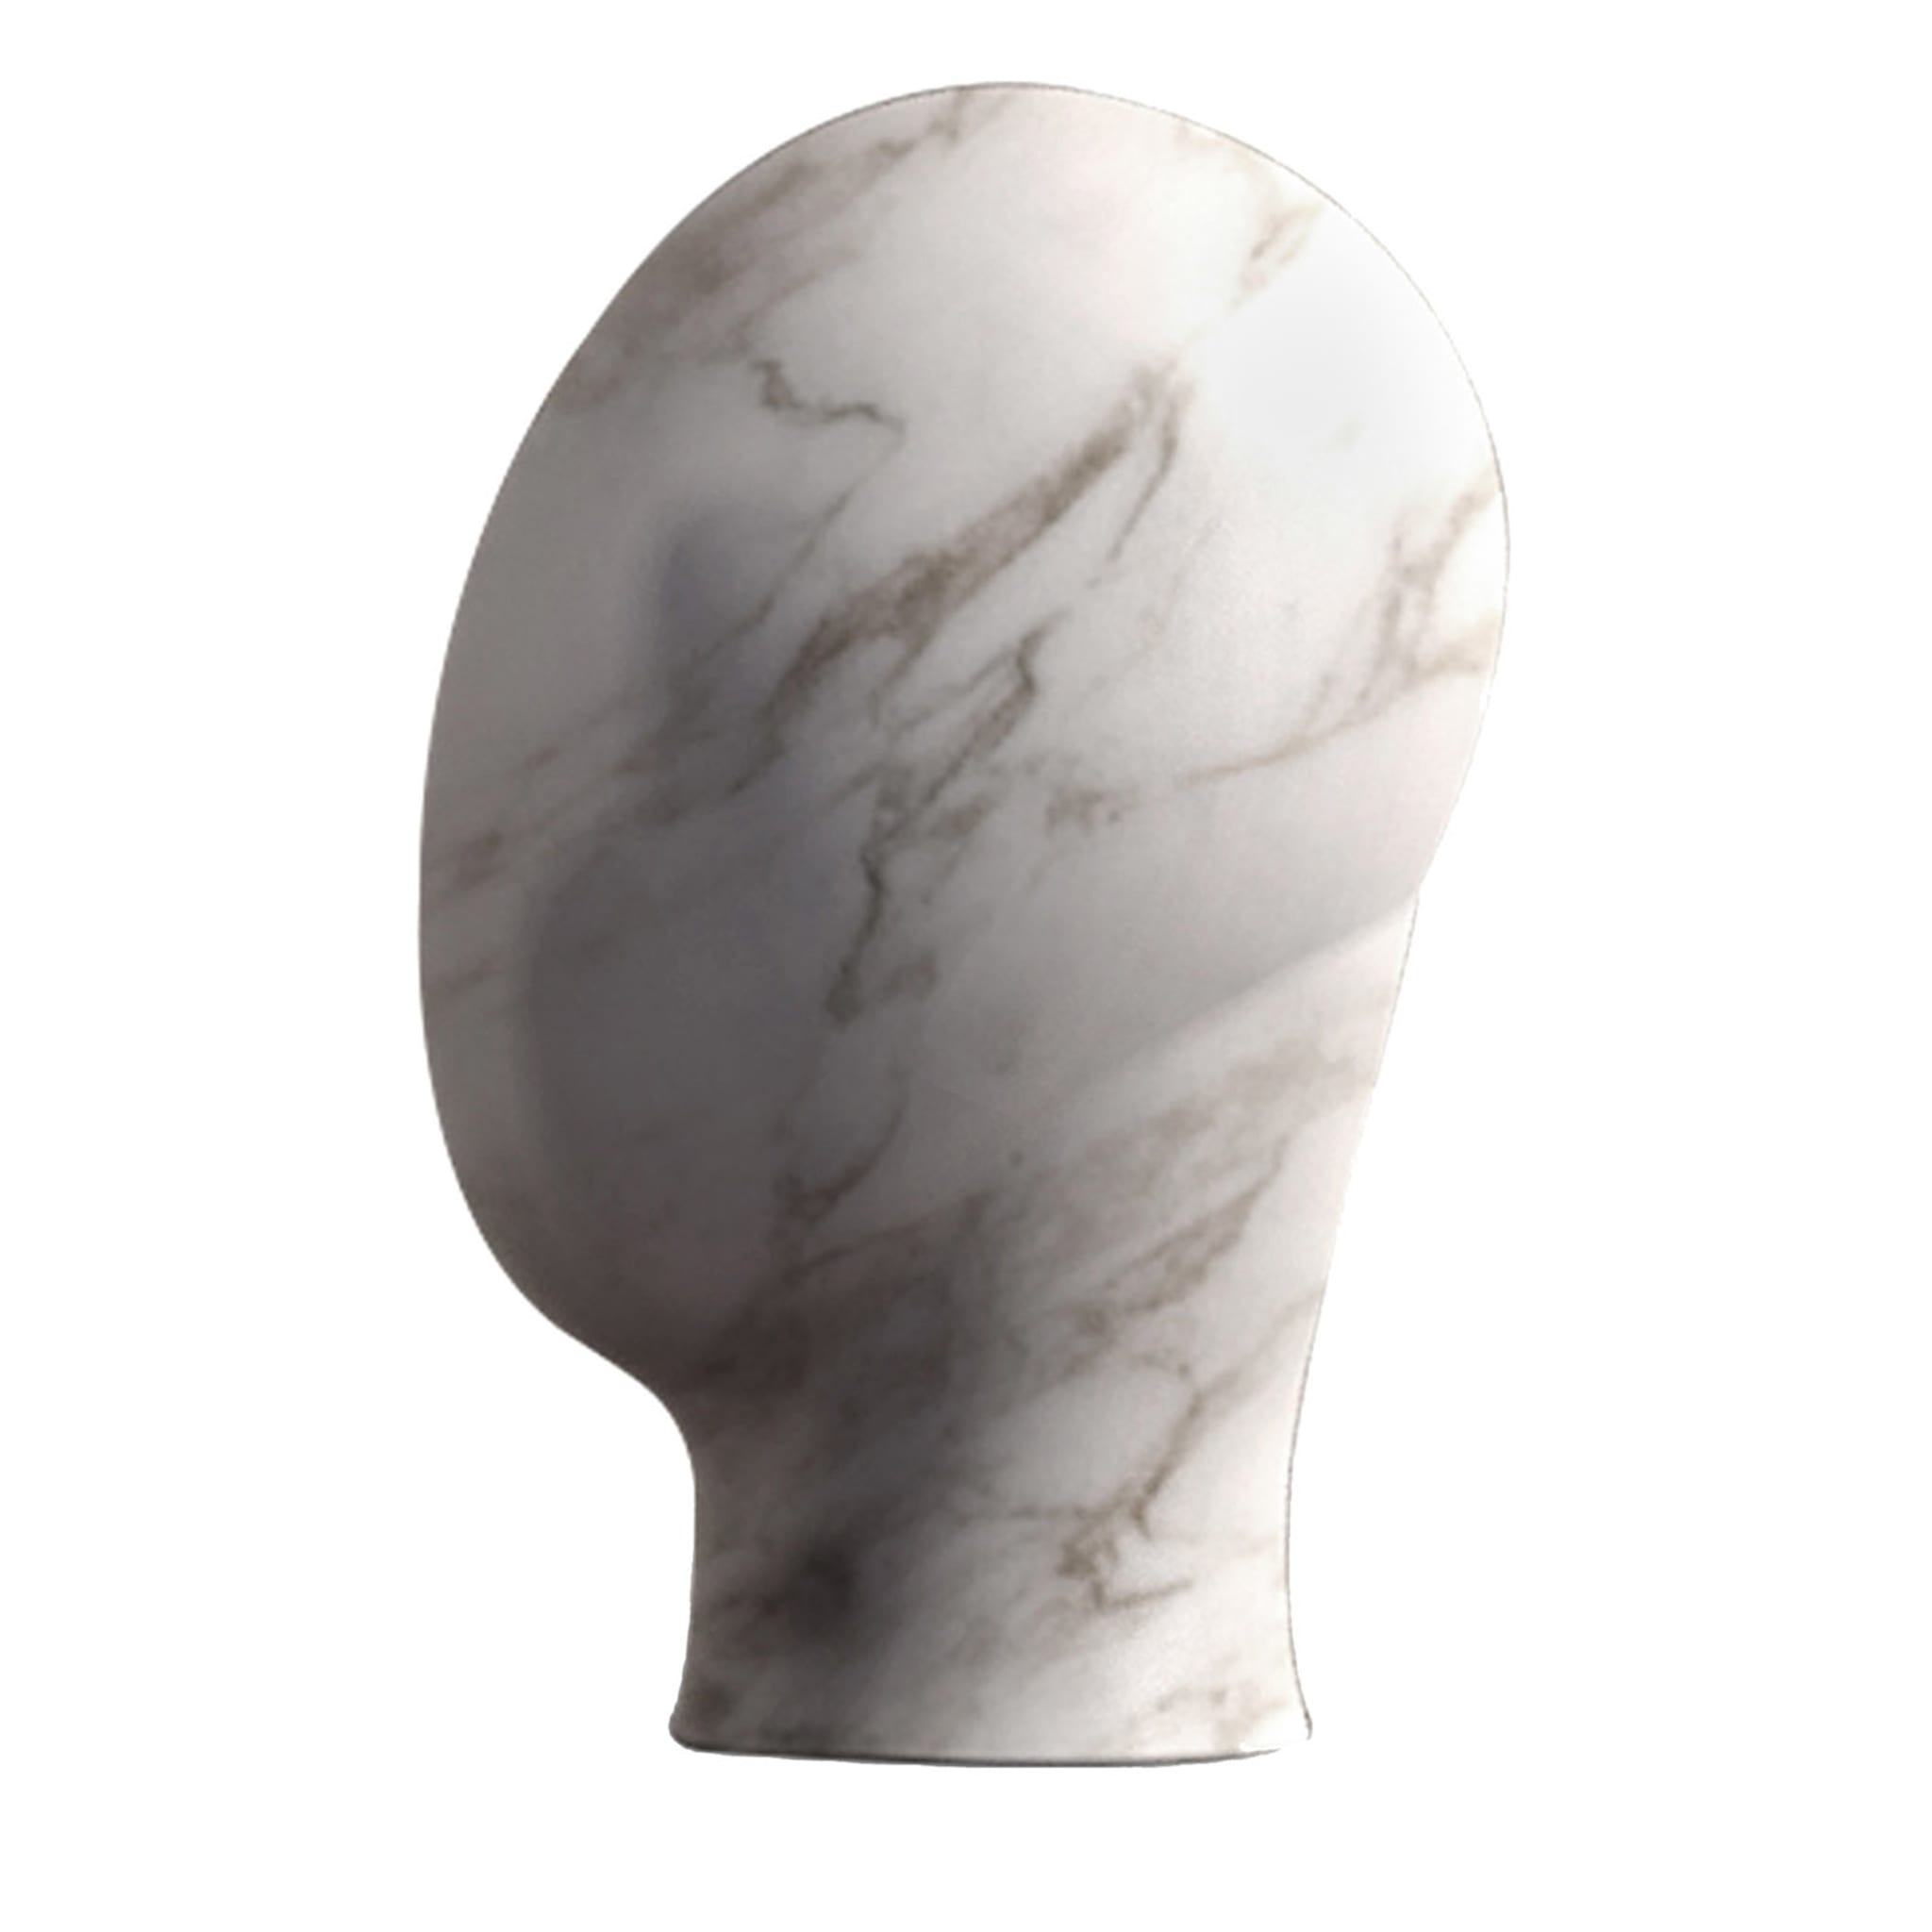 Heads Carrara Marble Monolithic Sculpture - Main view